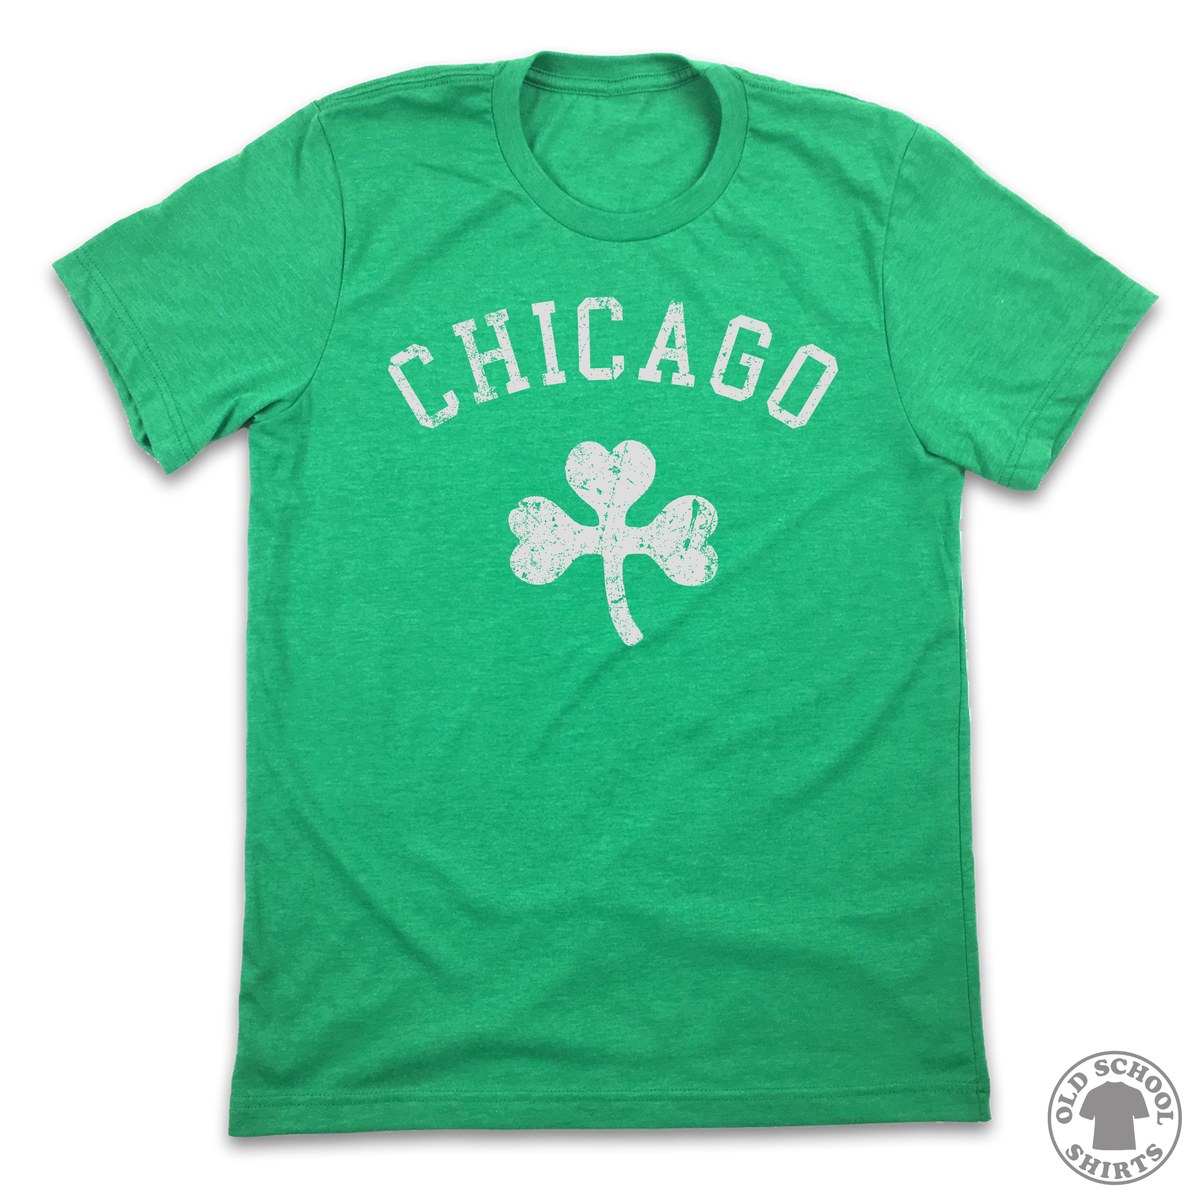 Chicago Shamrocks - Old School Shirts- Retro Sports T Shirts